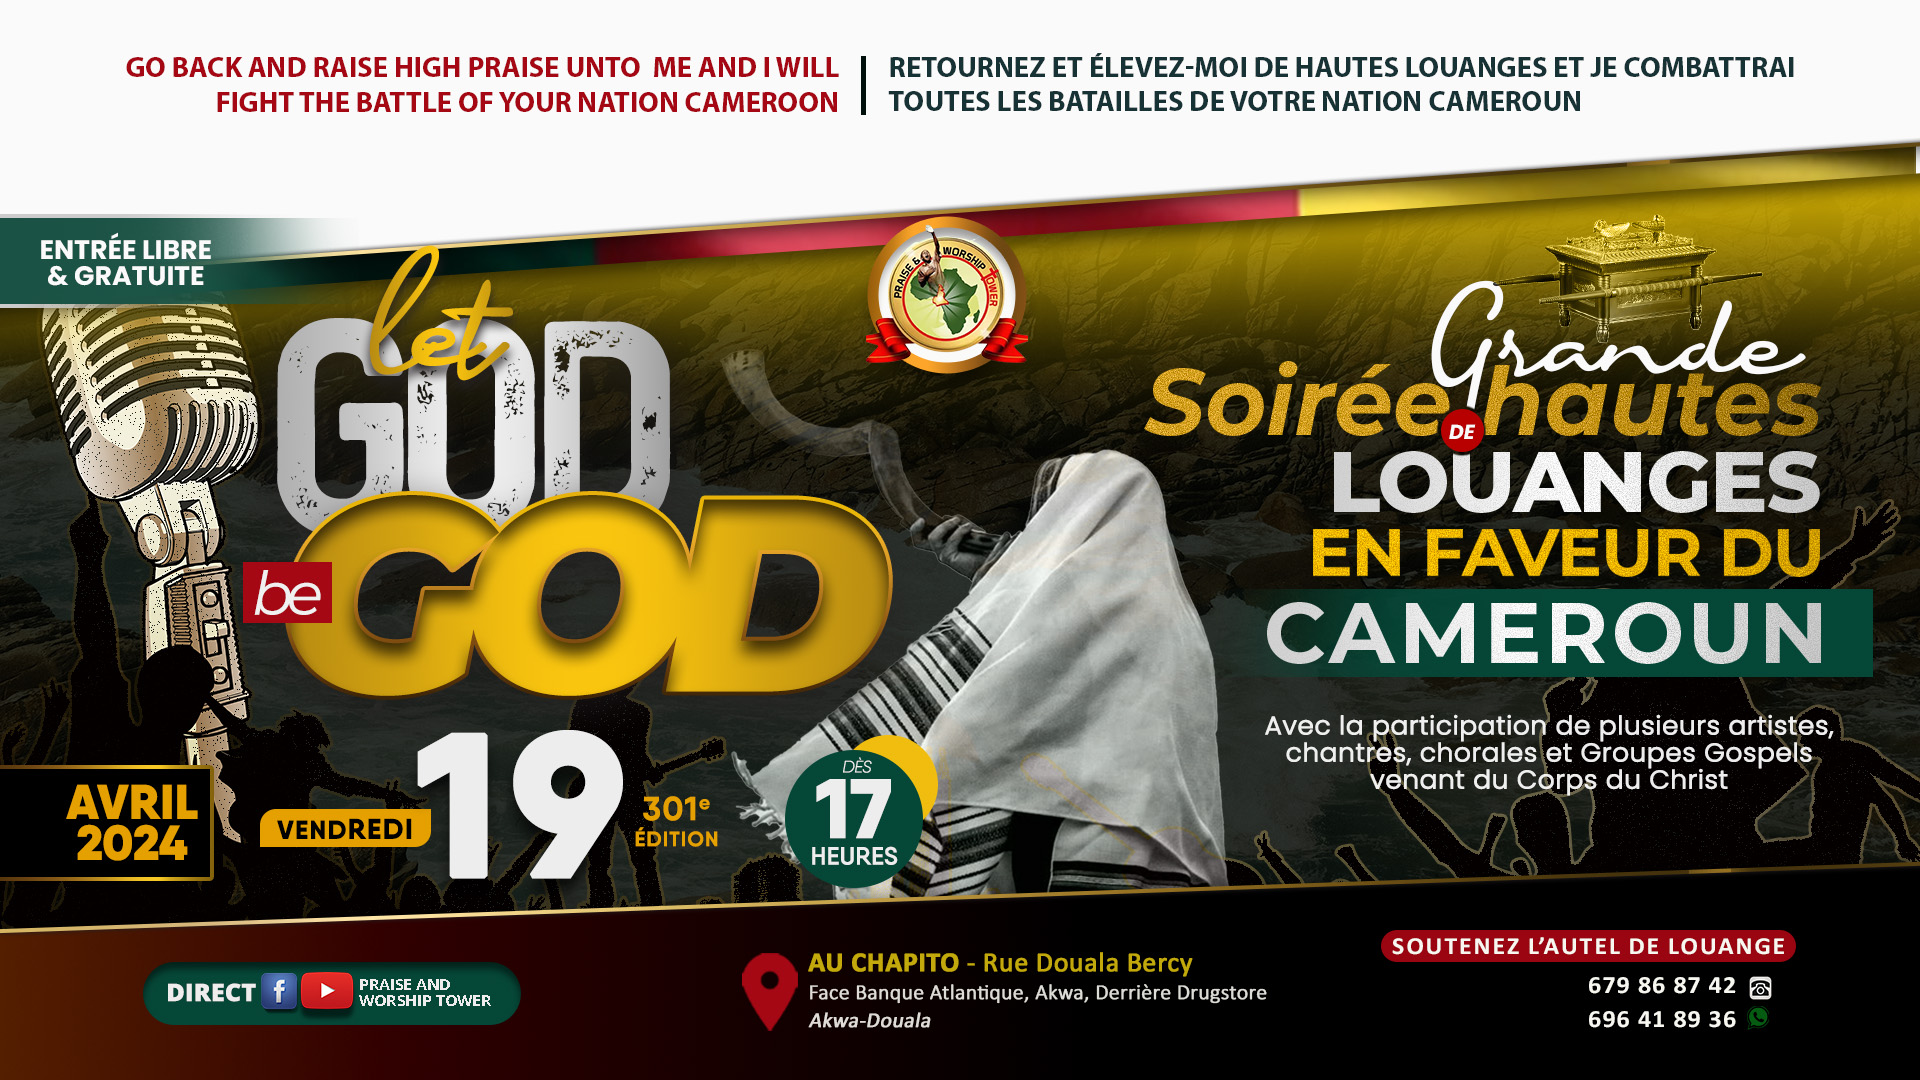 301e édition des soirées de hautes louanges en faveur du Cameroun